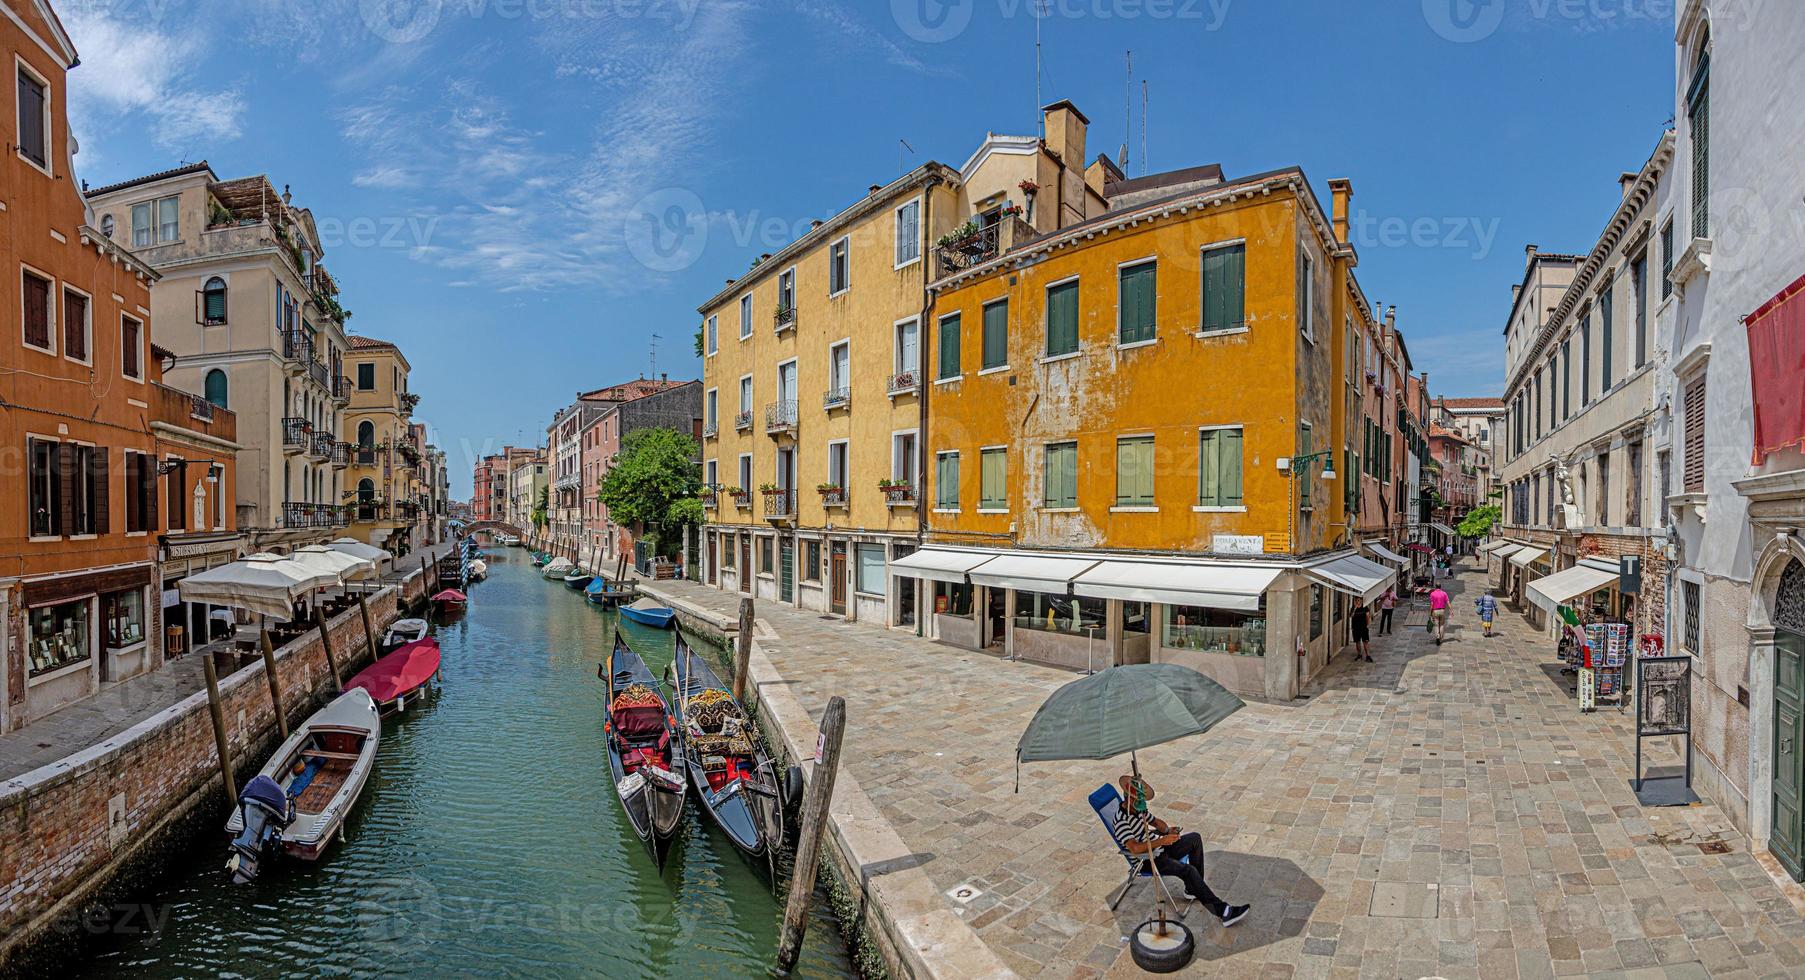 cena da cidade de veneza durante o bloqueio covid-19 sem visitantes durante o dia em 2020 foto